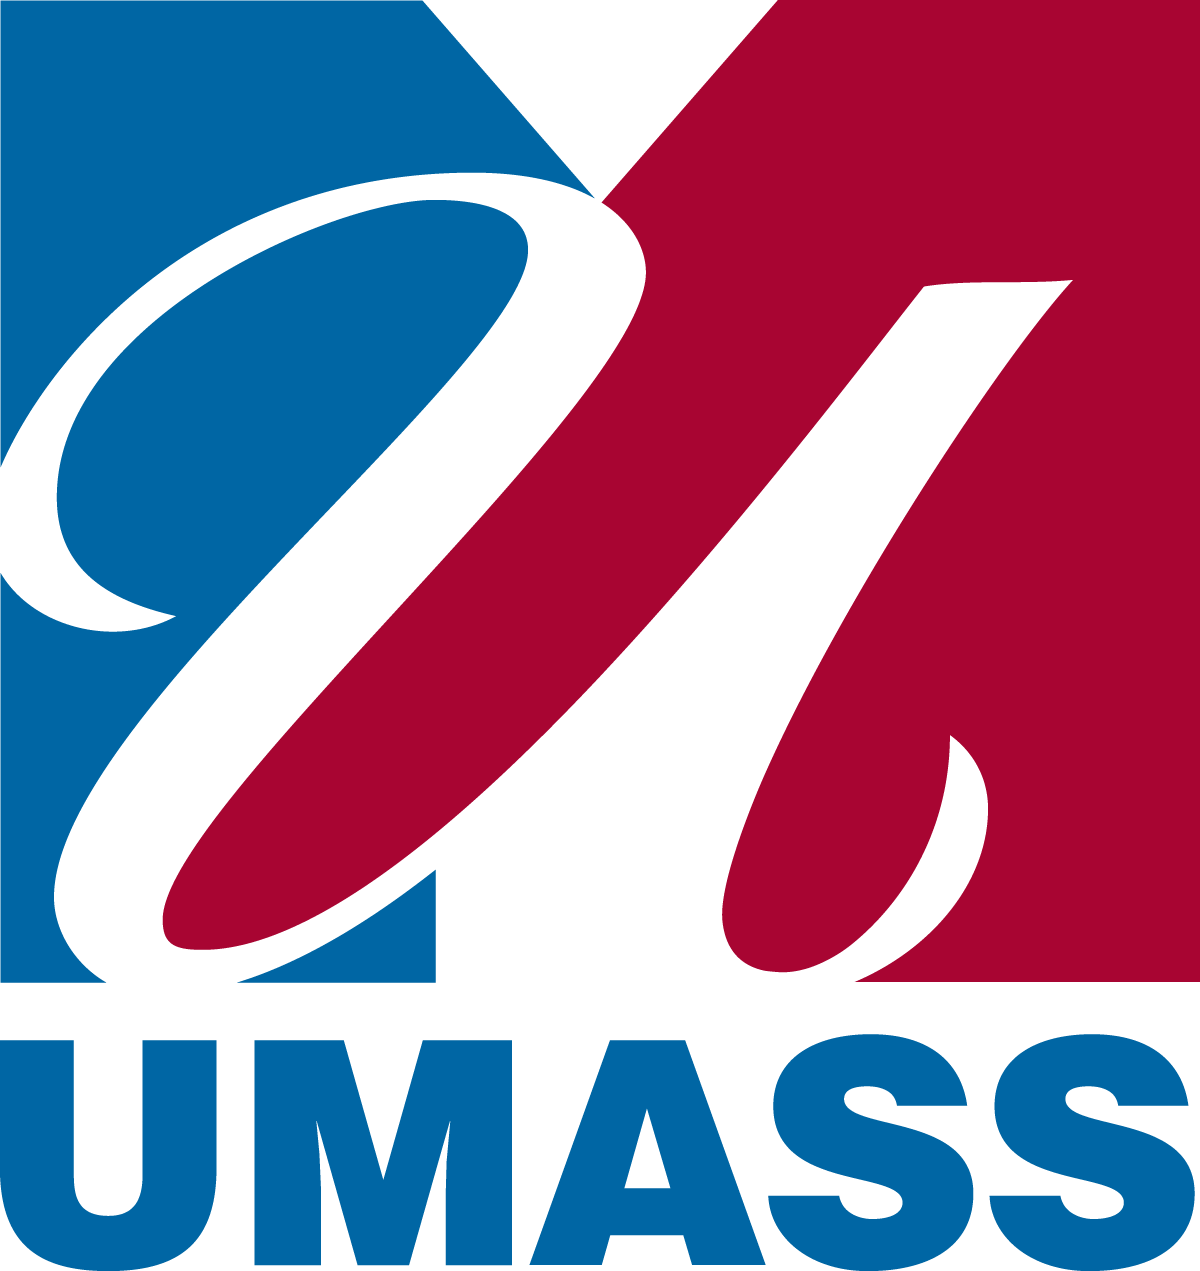 UMass seal